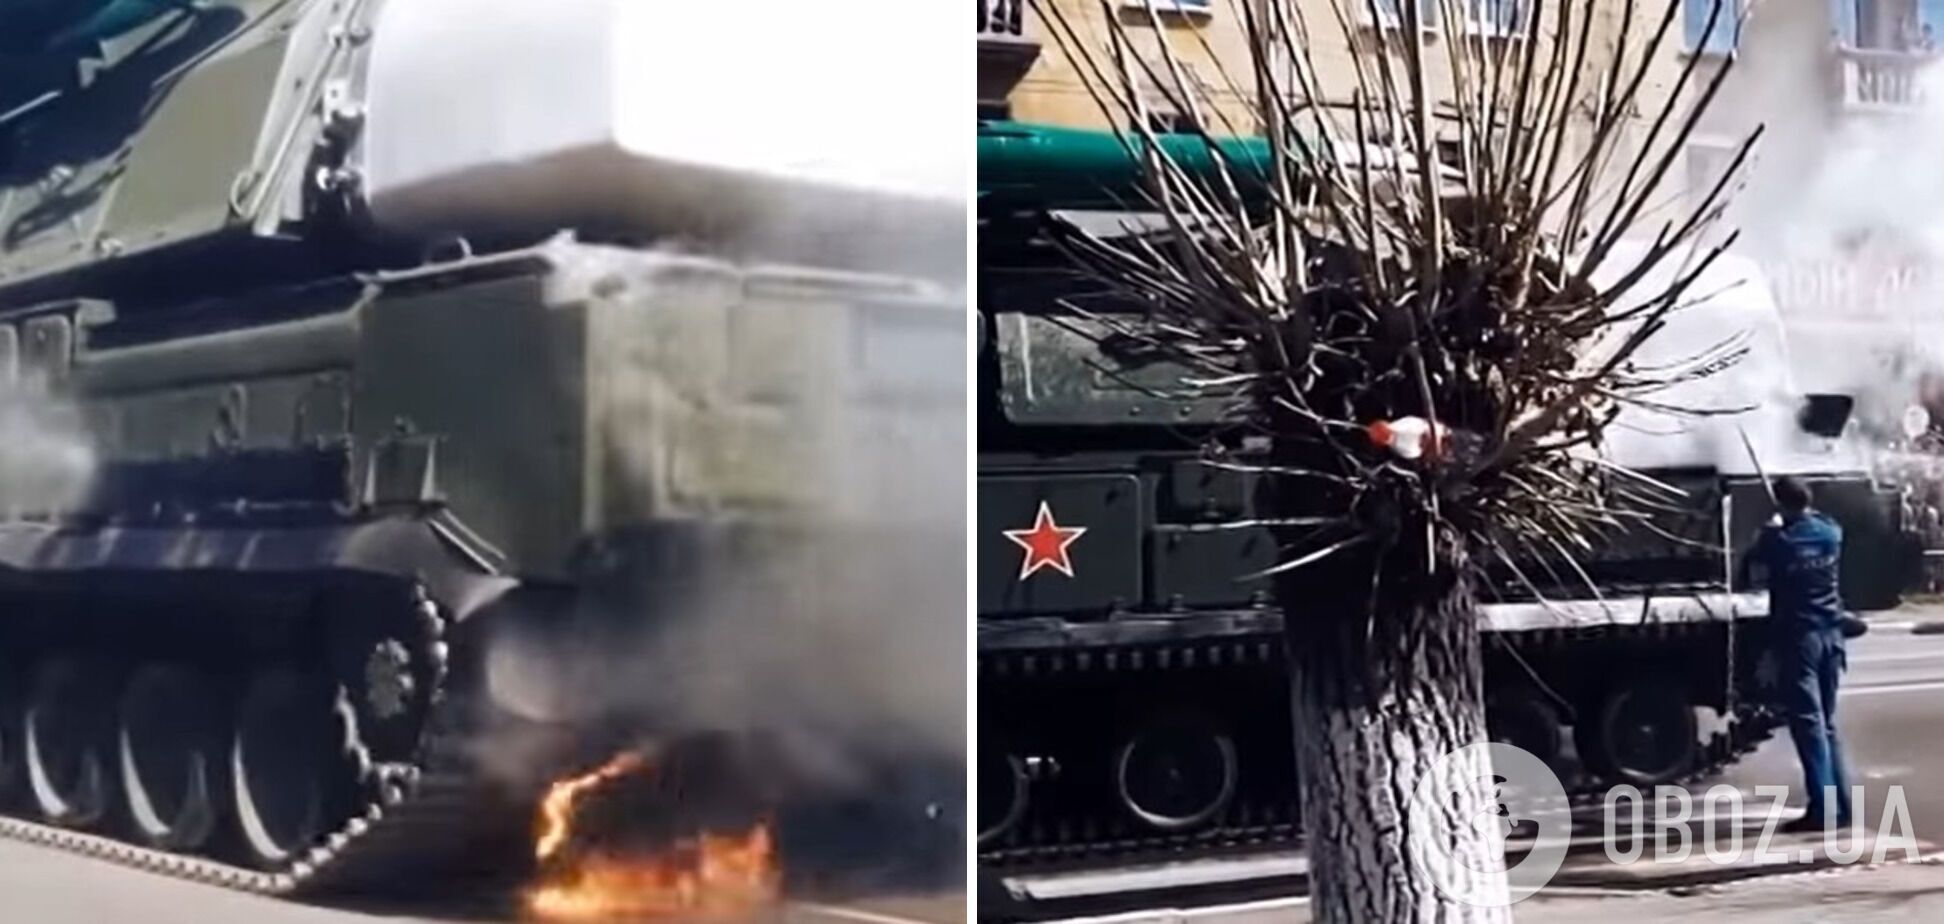 ЗРК "Бук" загорелся на военном параде в Чите